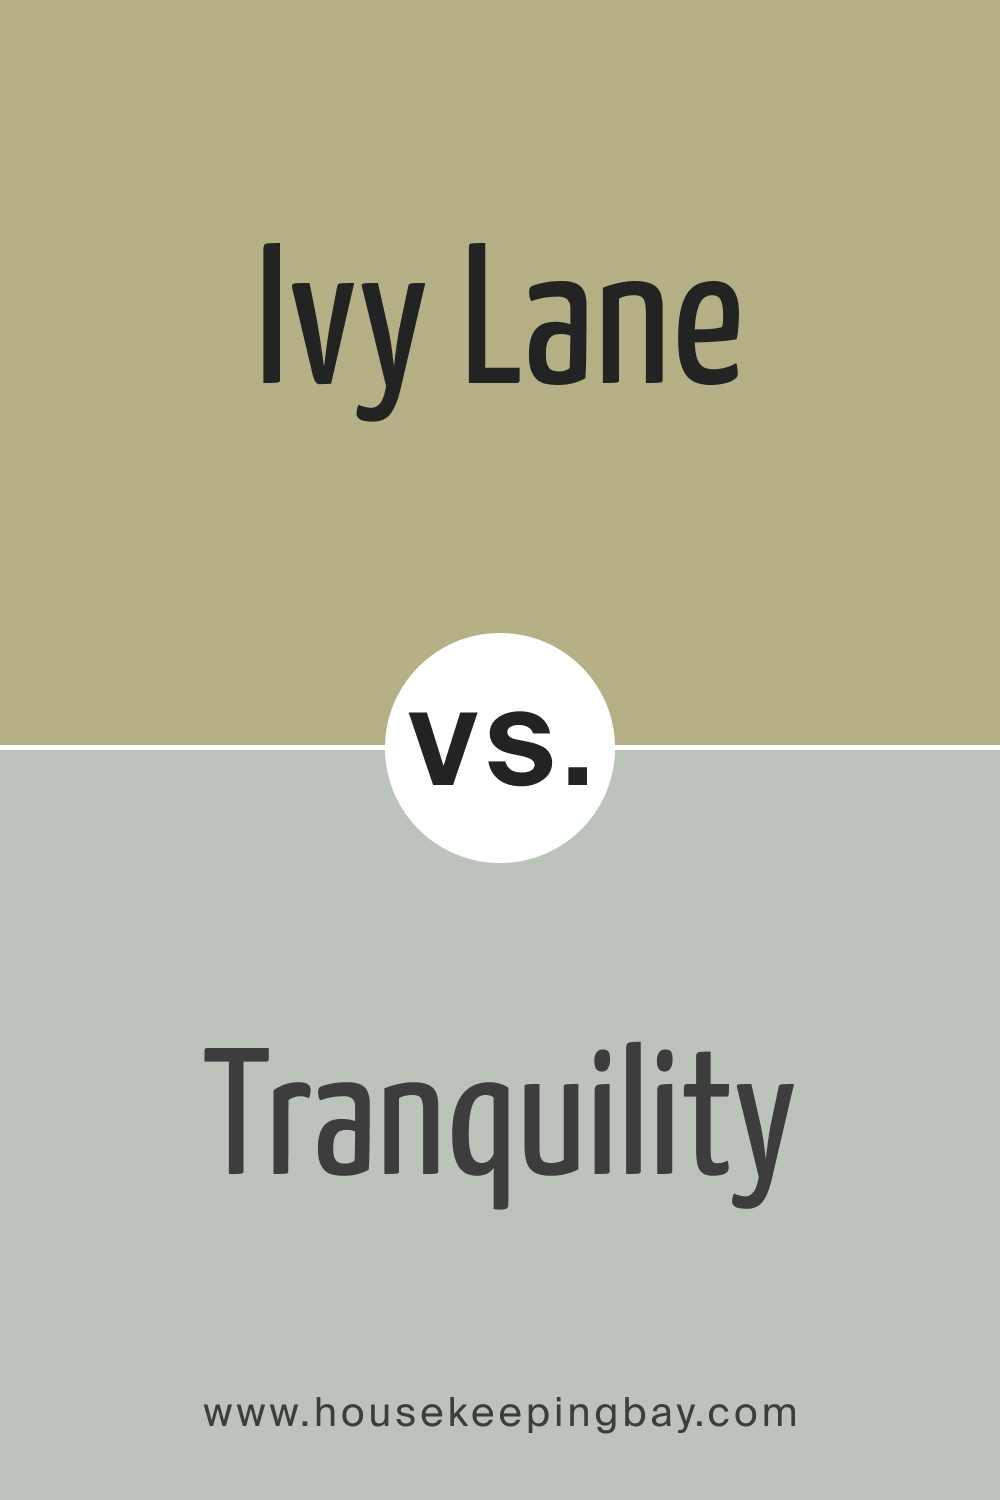 BM Ivy Lane 523 vs. AF-490 Tranquility